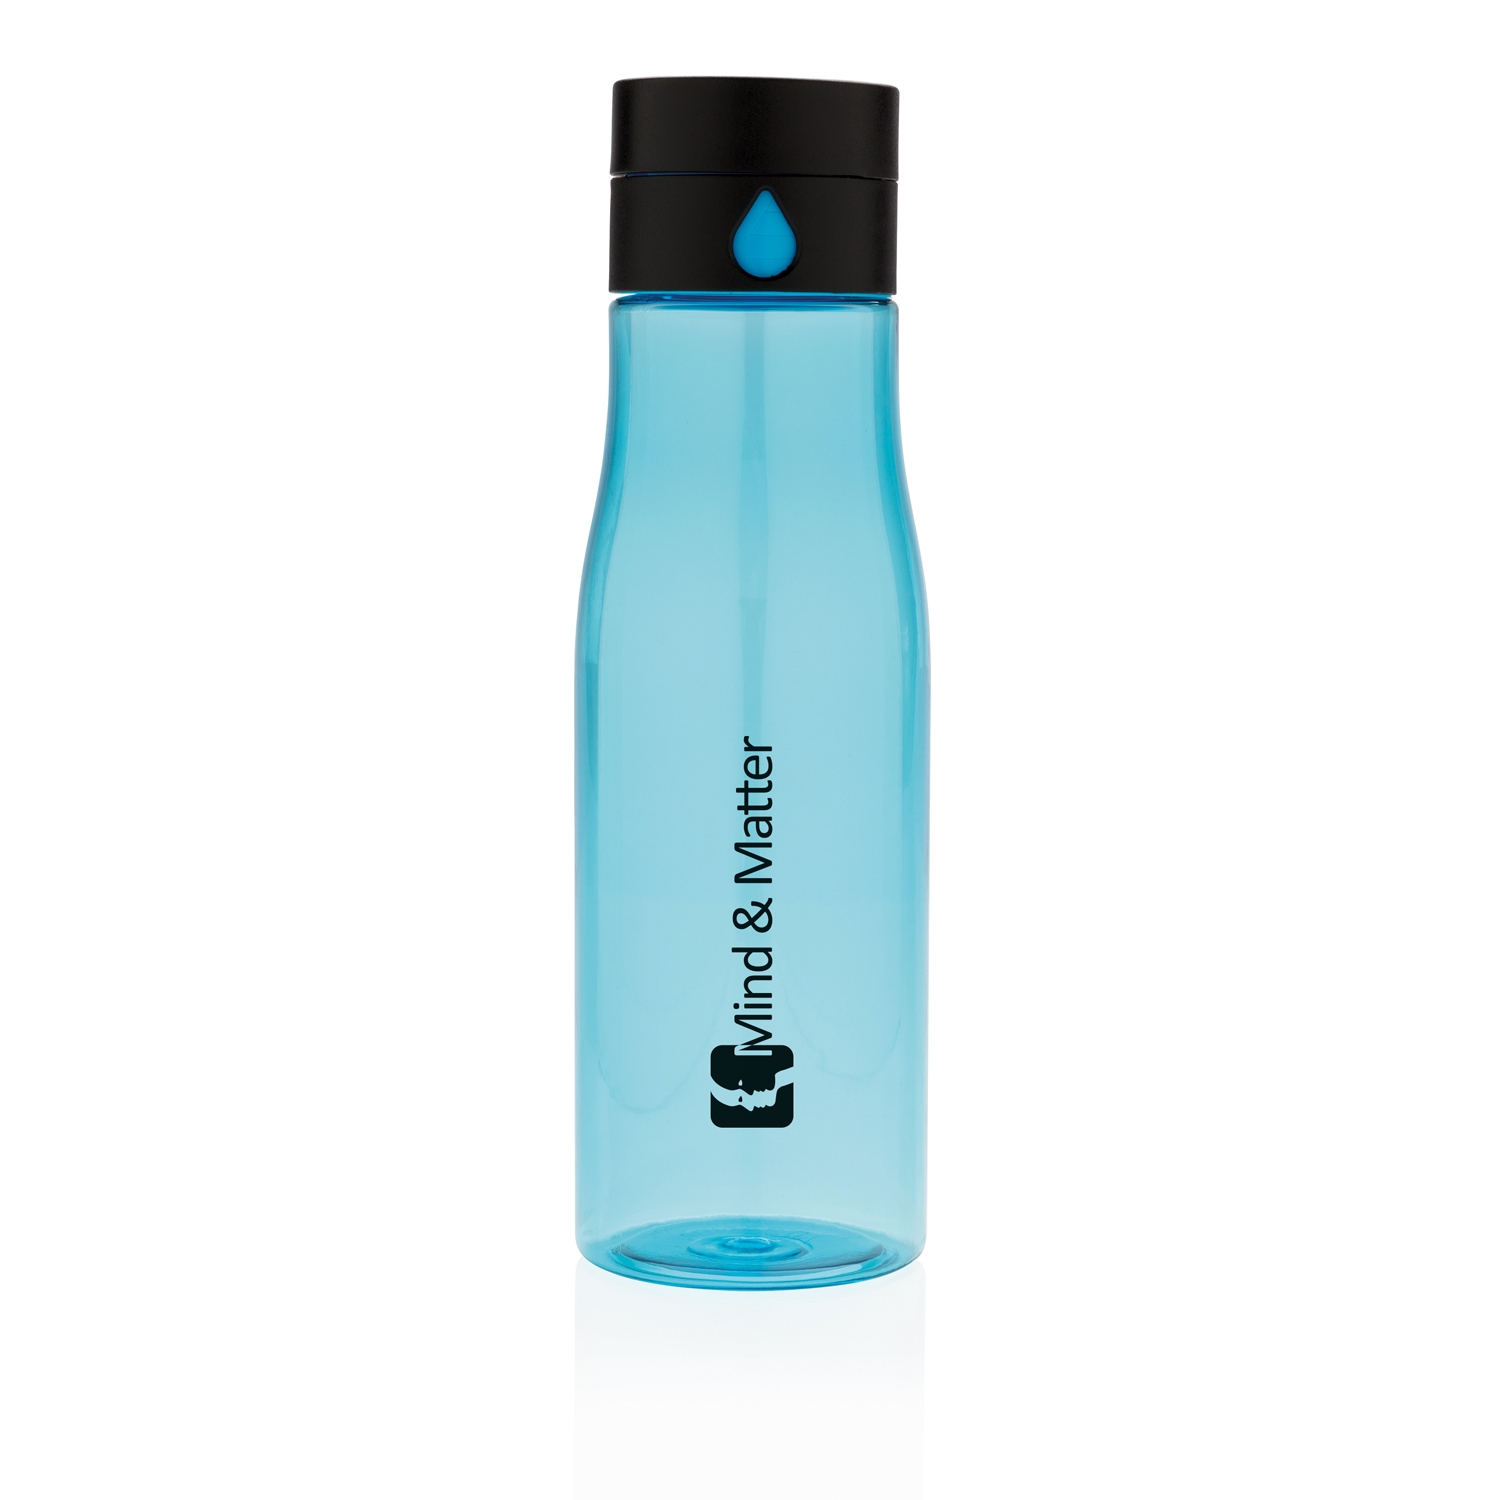 Бутылка для воды Aqua из материала Tritan, синий, tritan; pp